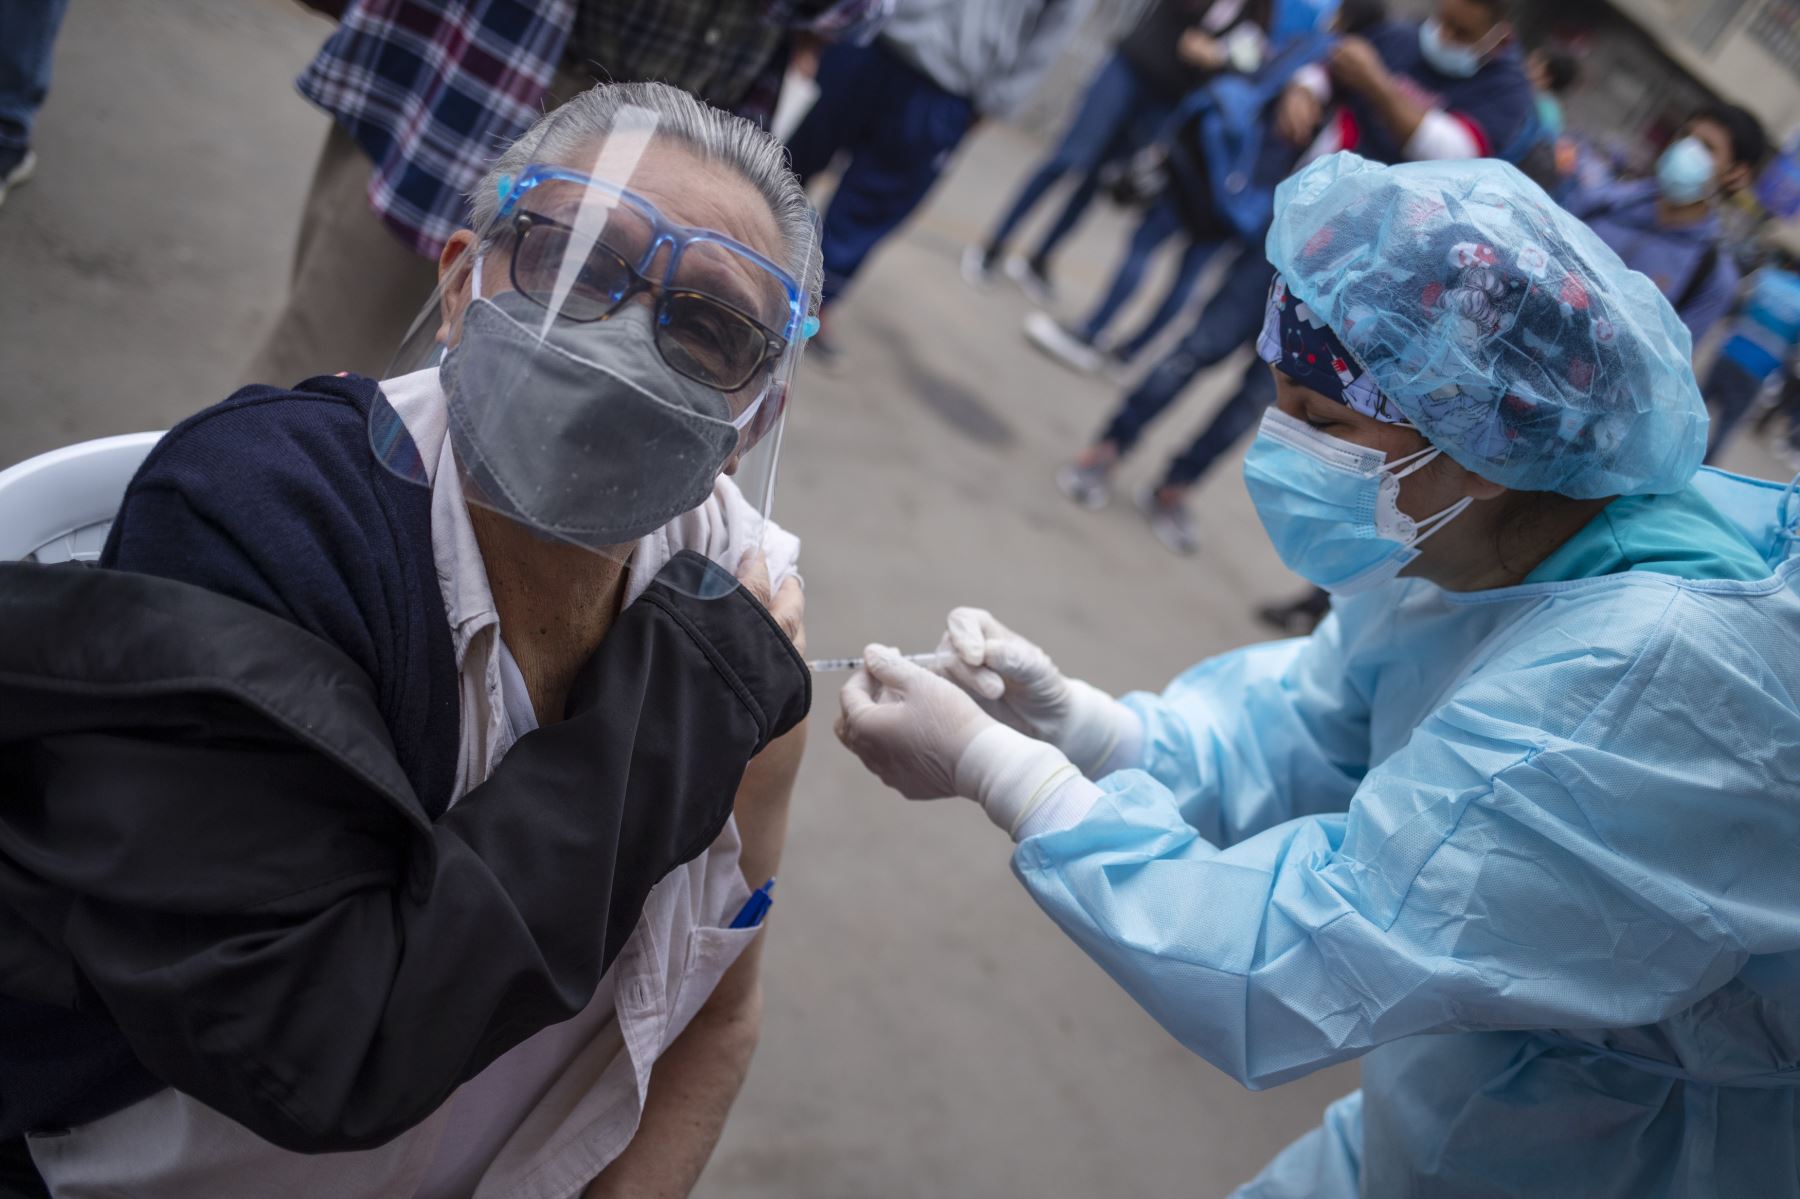 Cabe señalar que el fin de semana Sisol instaló un puesto de vacunación y descarte de COVID-19; durante el fin de semana se aplicaron 744 dosis de vacunas y 430 pruebas antigénicas.
Foto: ANDINA/Municipalidad de Lima